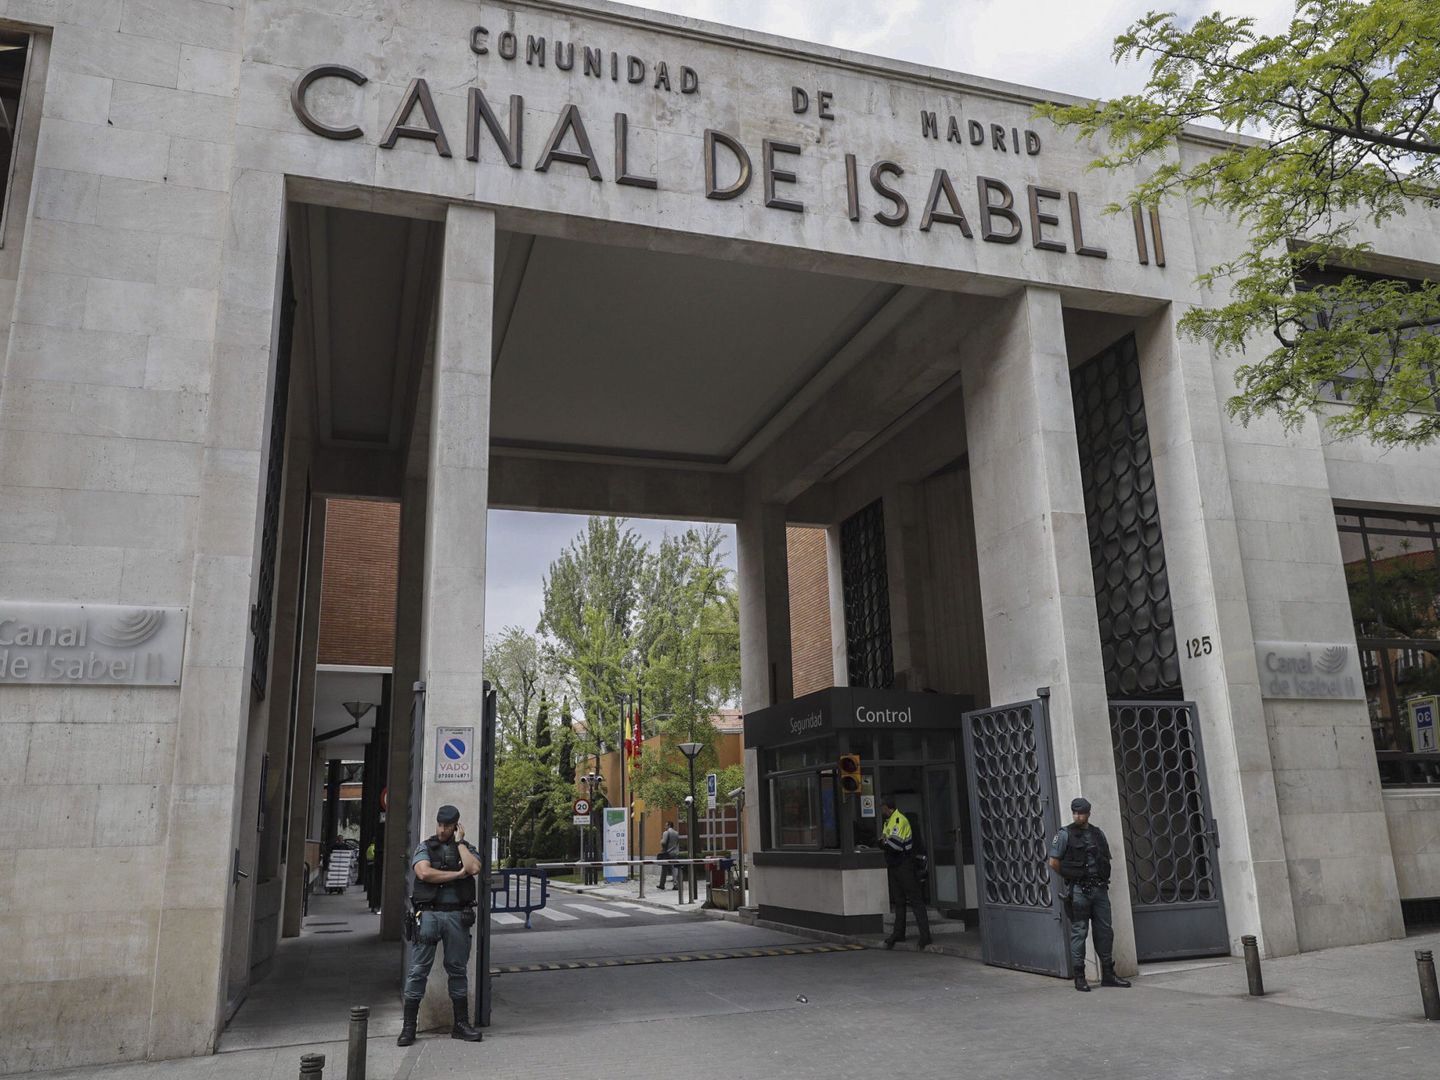 La sede central en Madrid del Canal de Isabel II. (EFE)